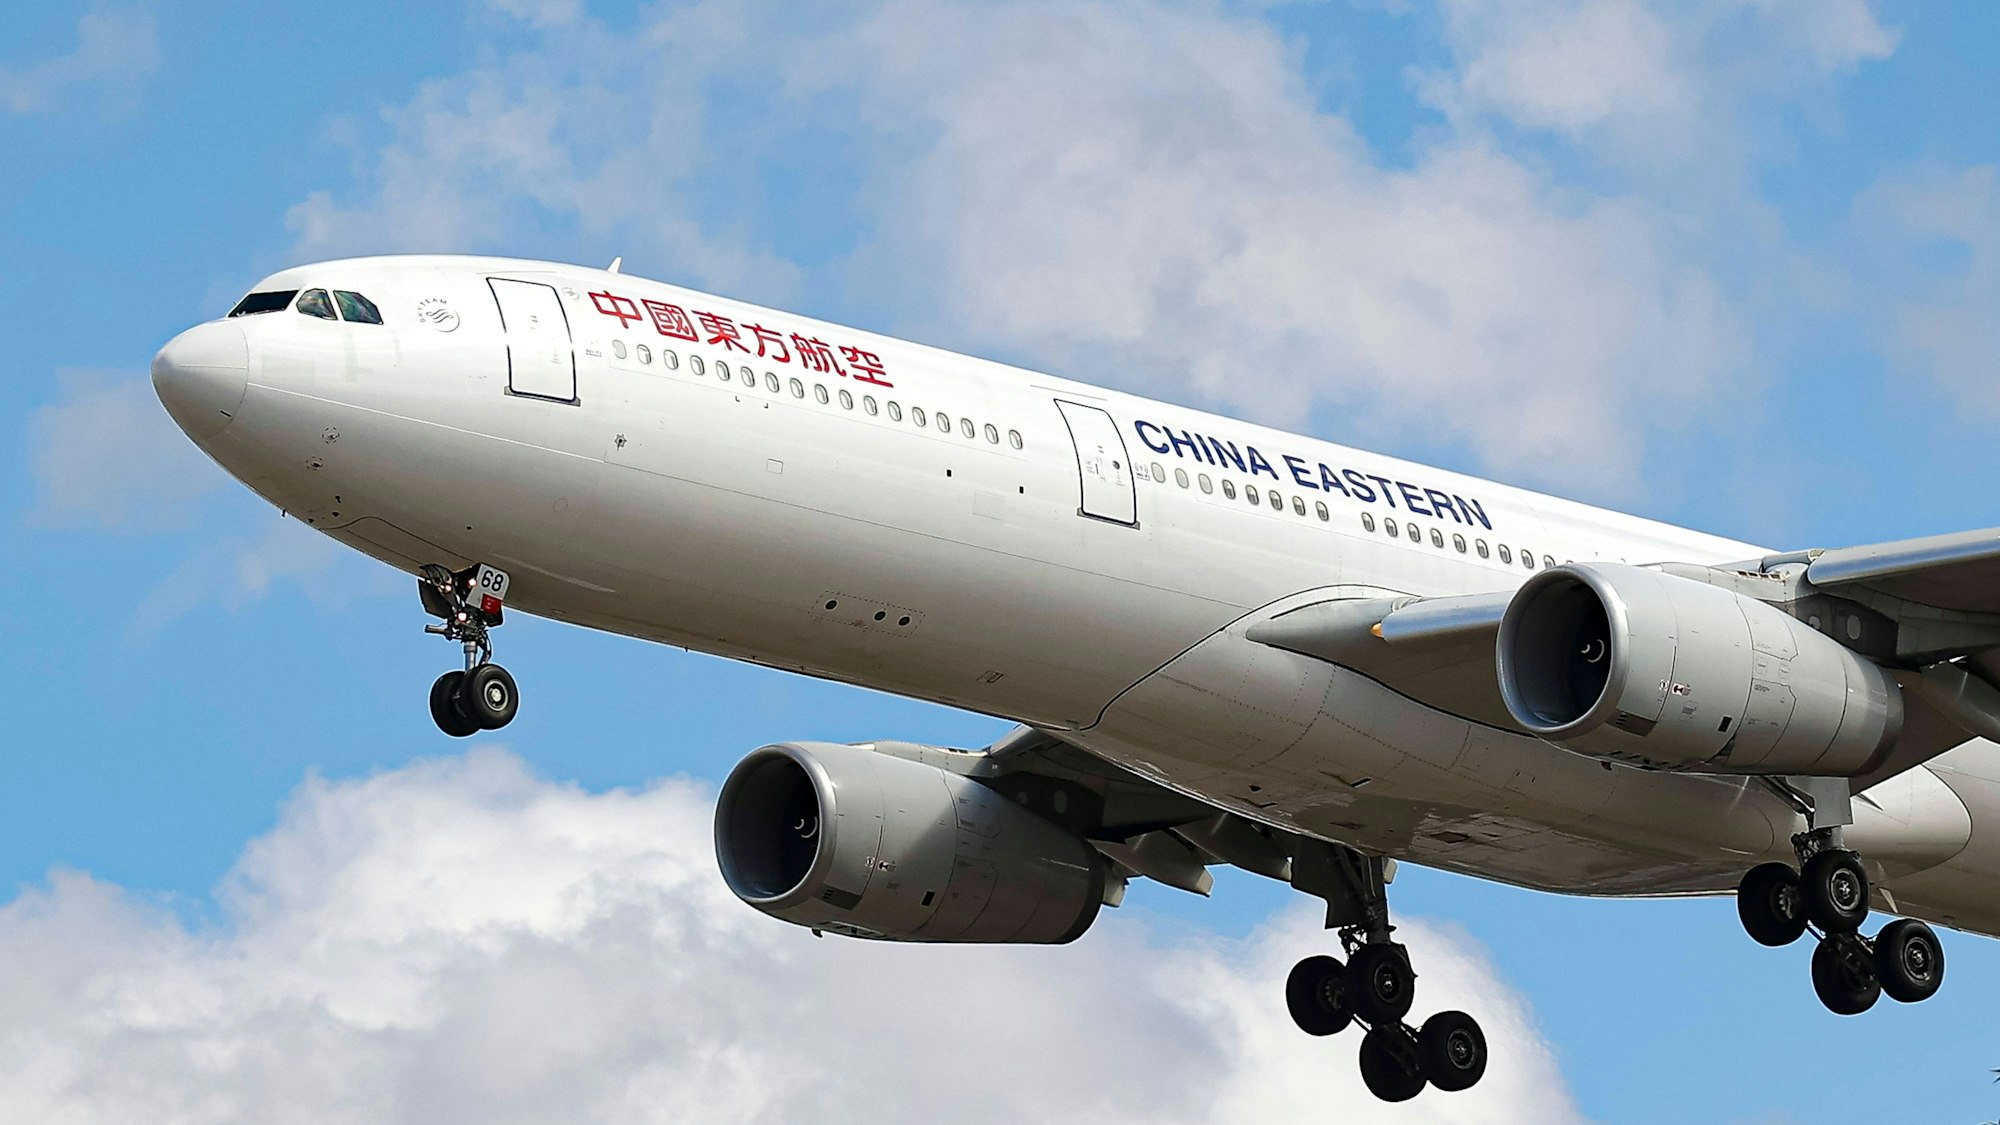 Ein Airbus A330 der chinesischen Fluggesellschaft China Eastern Airlines im Landeanflug auf einen Flughafen. Eine Maschine der Fluggesellschaft hatte über Xiamen eine Notlandung einleiten müssen. (Symbolbild)